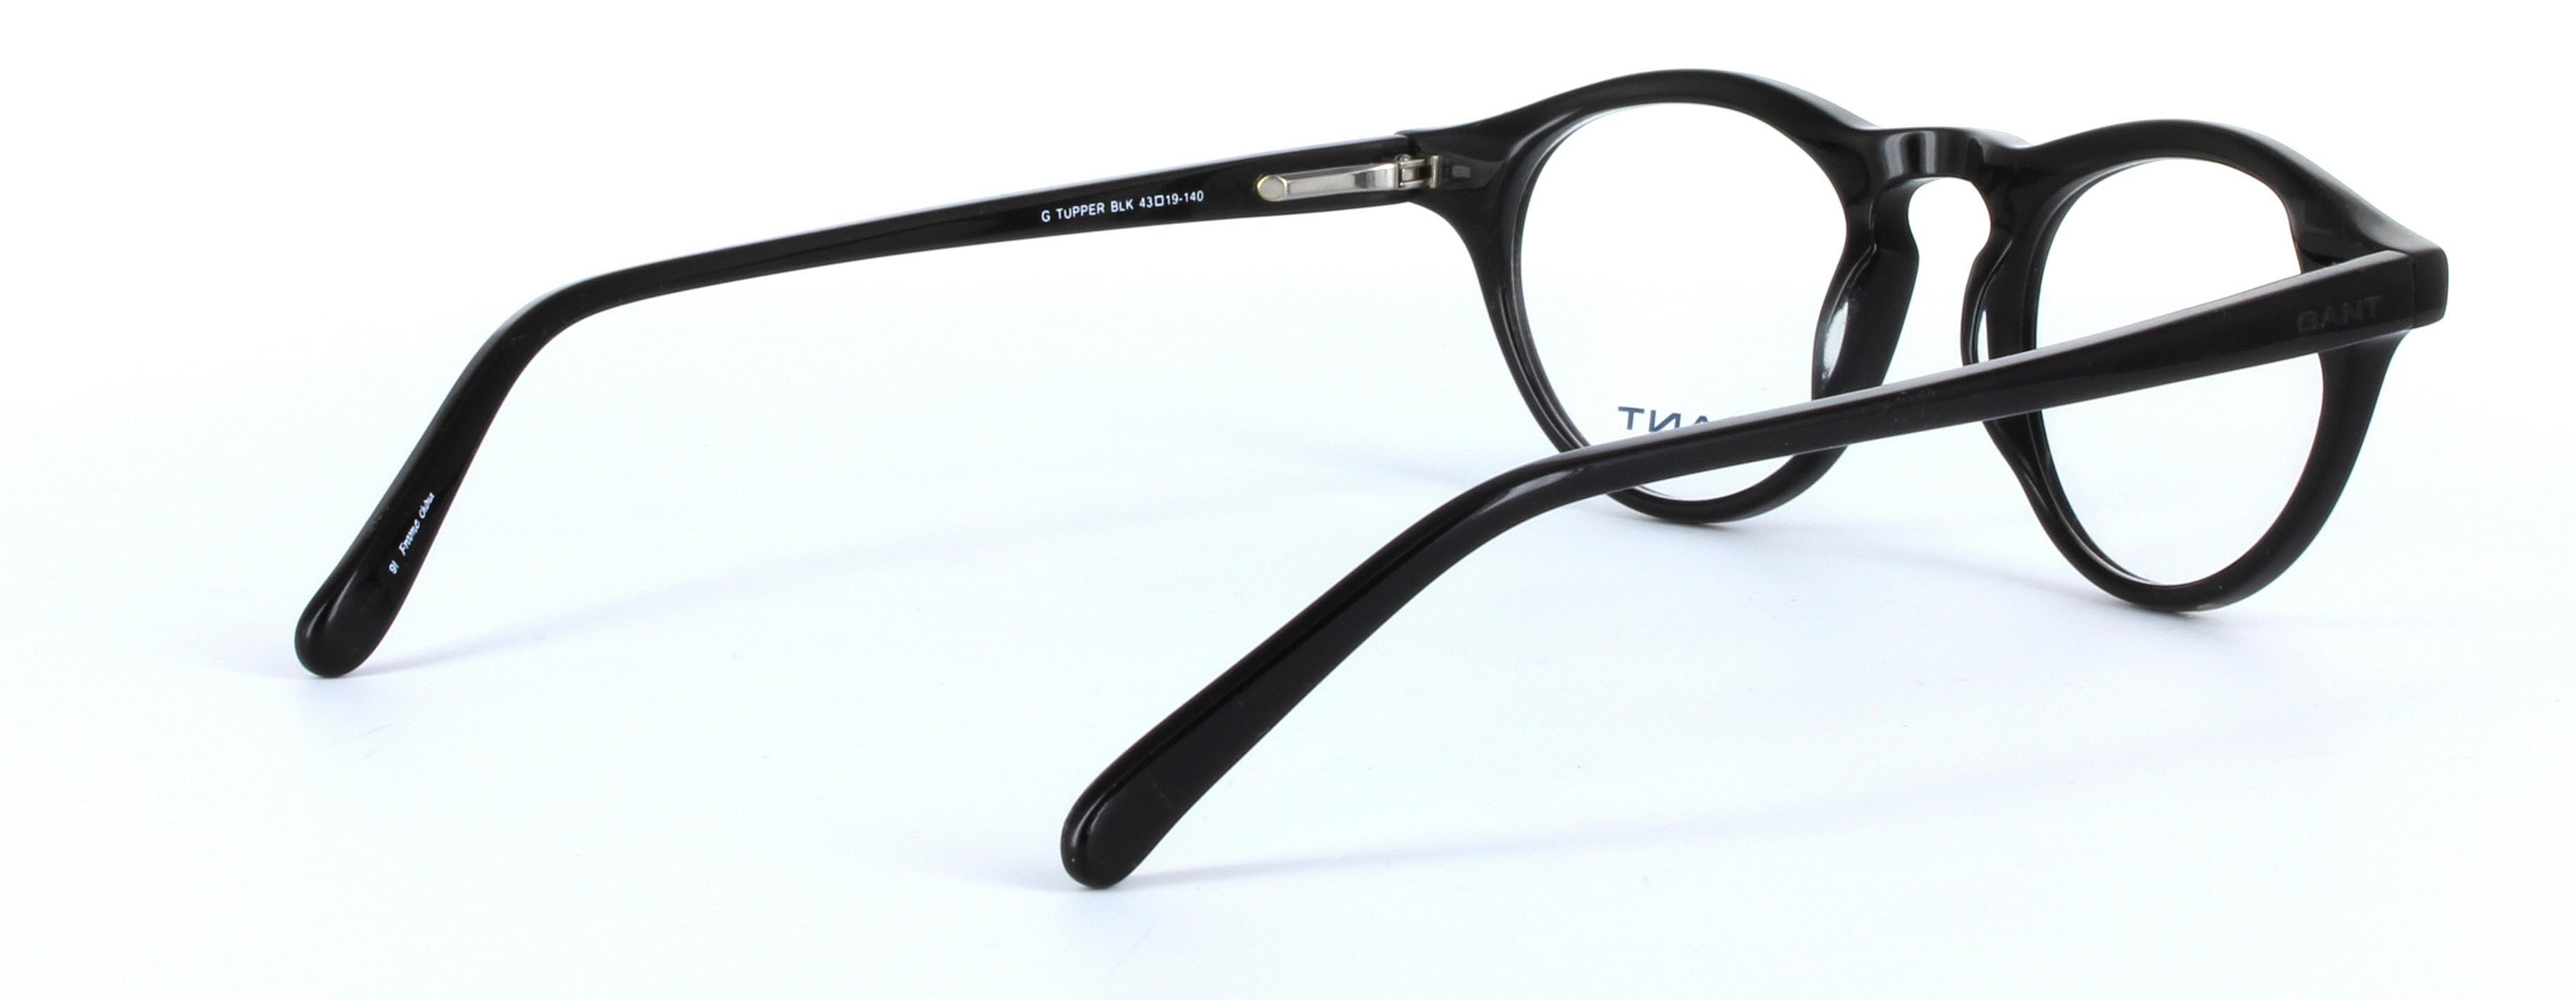 GANT TUPPER Black Full Rim Round Acetate Glasses - Image View 4